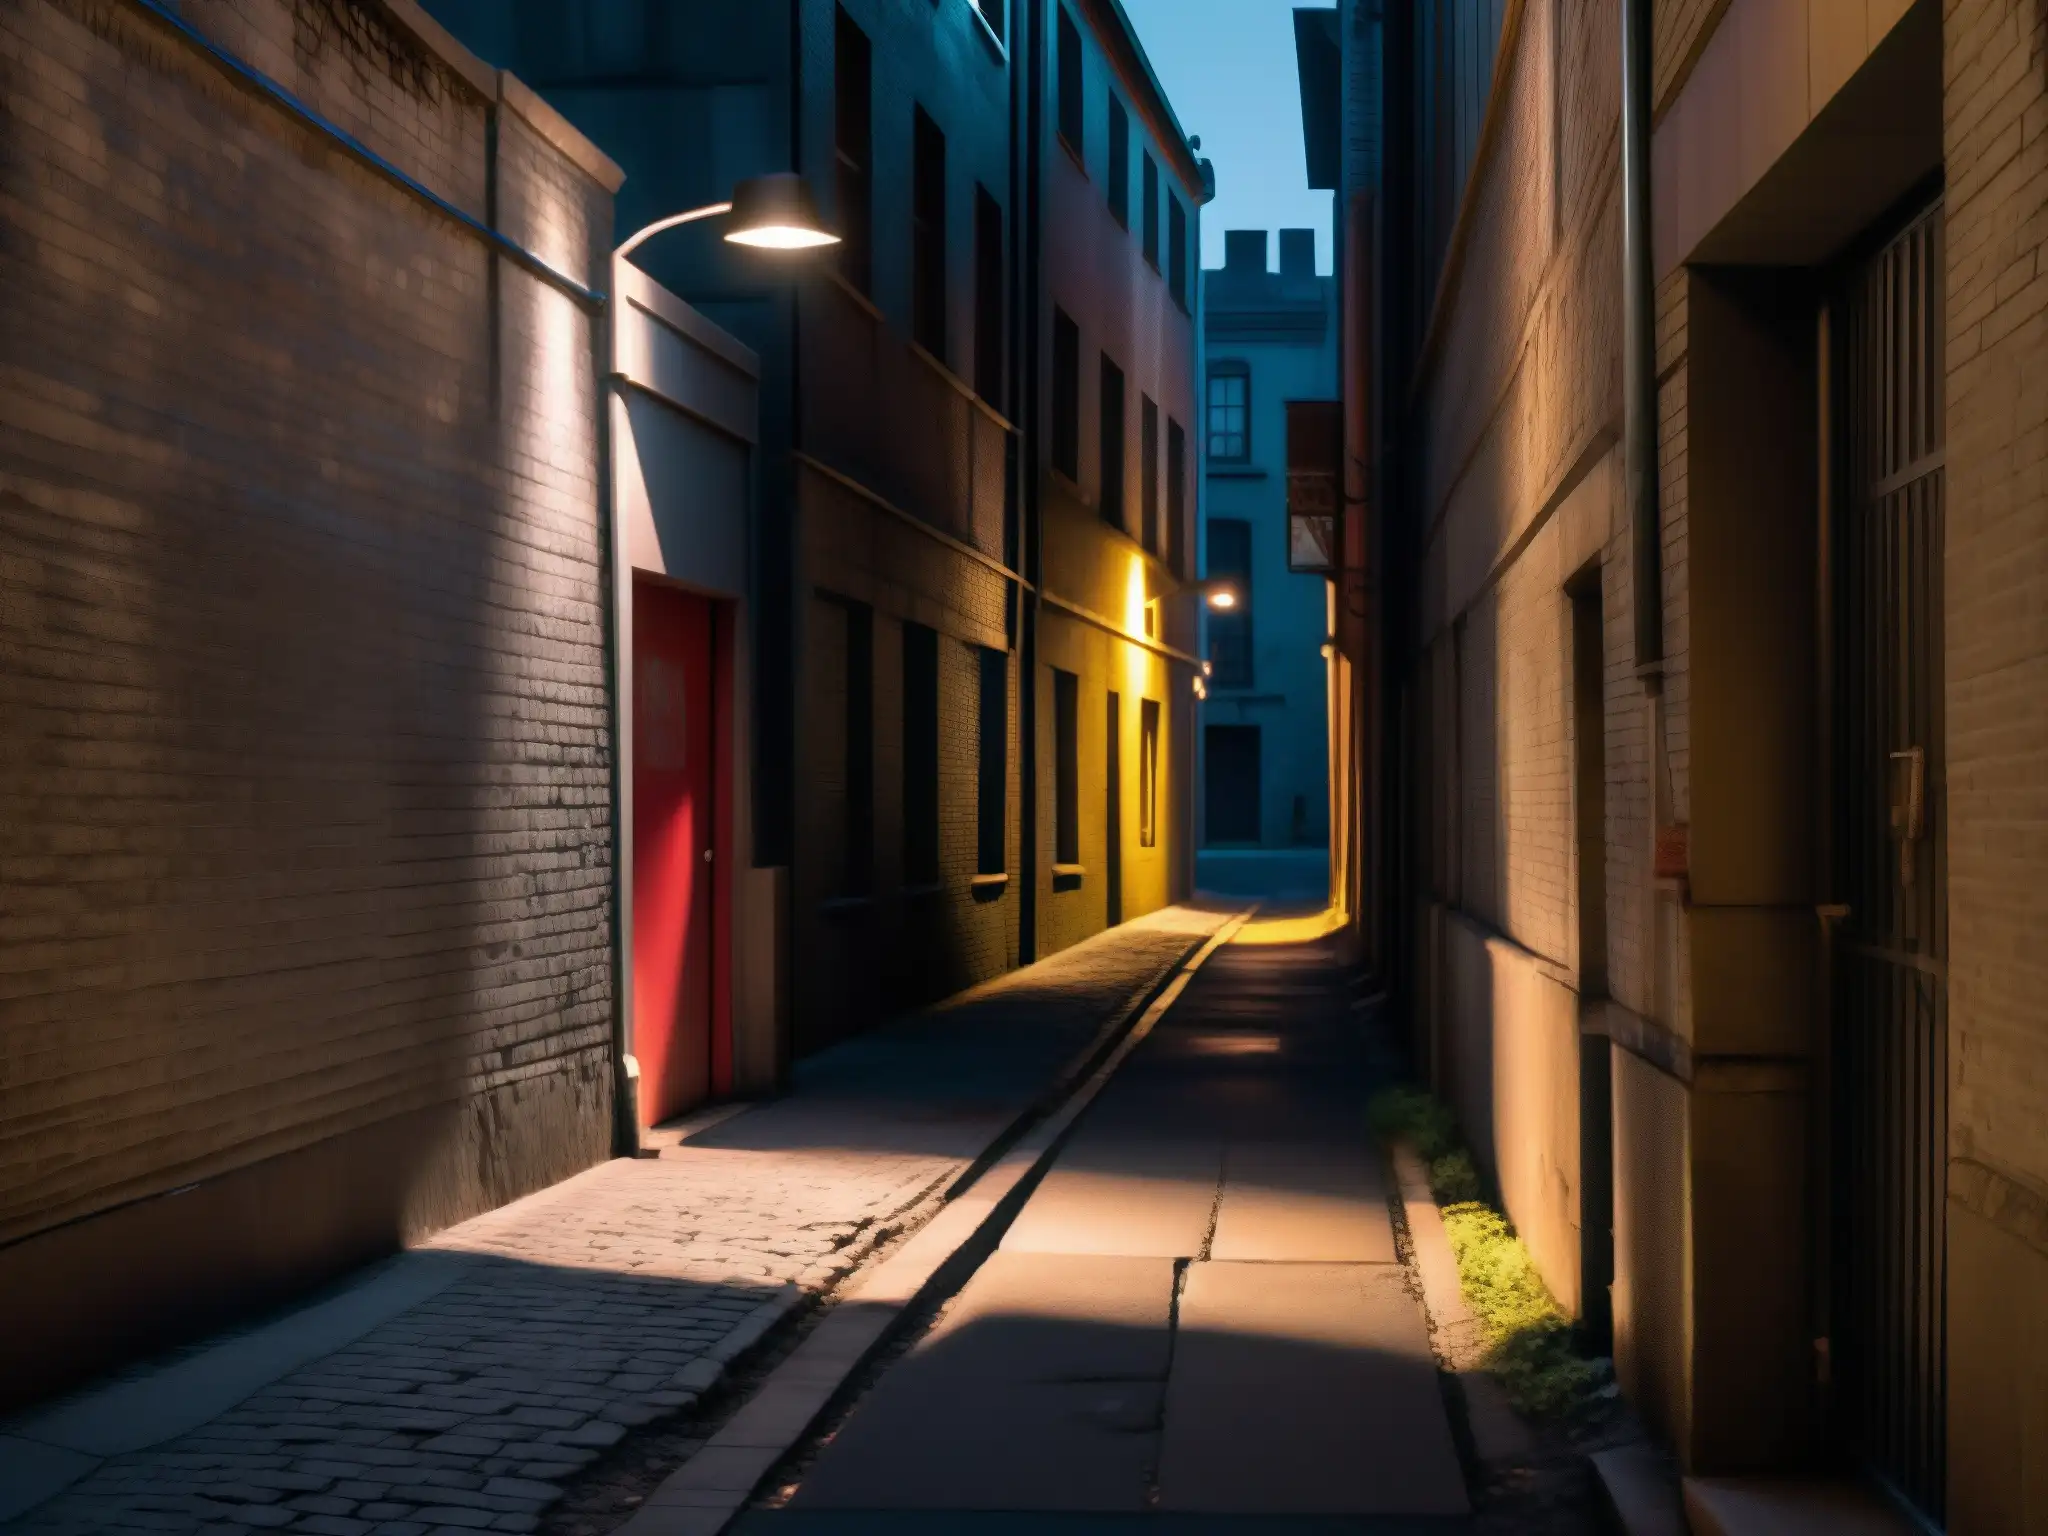 Alleyway nocturno iluminado por farola solitaria